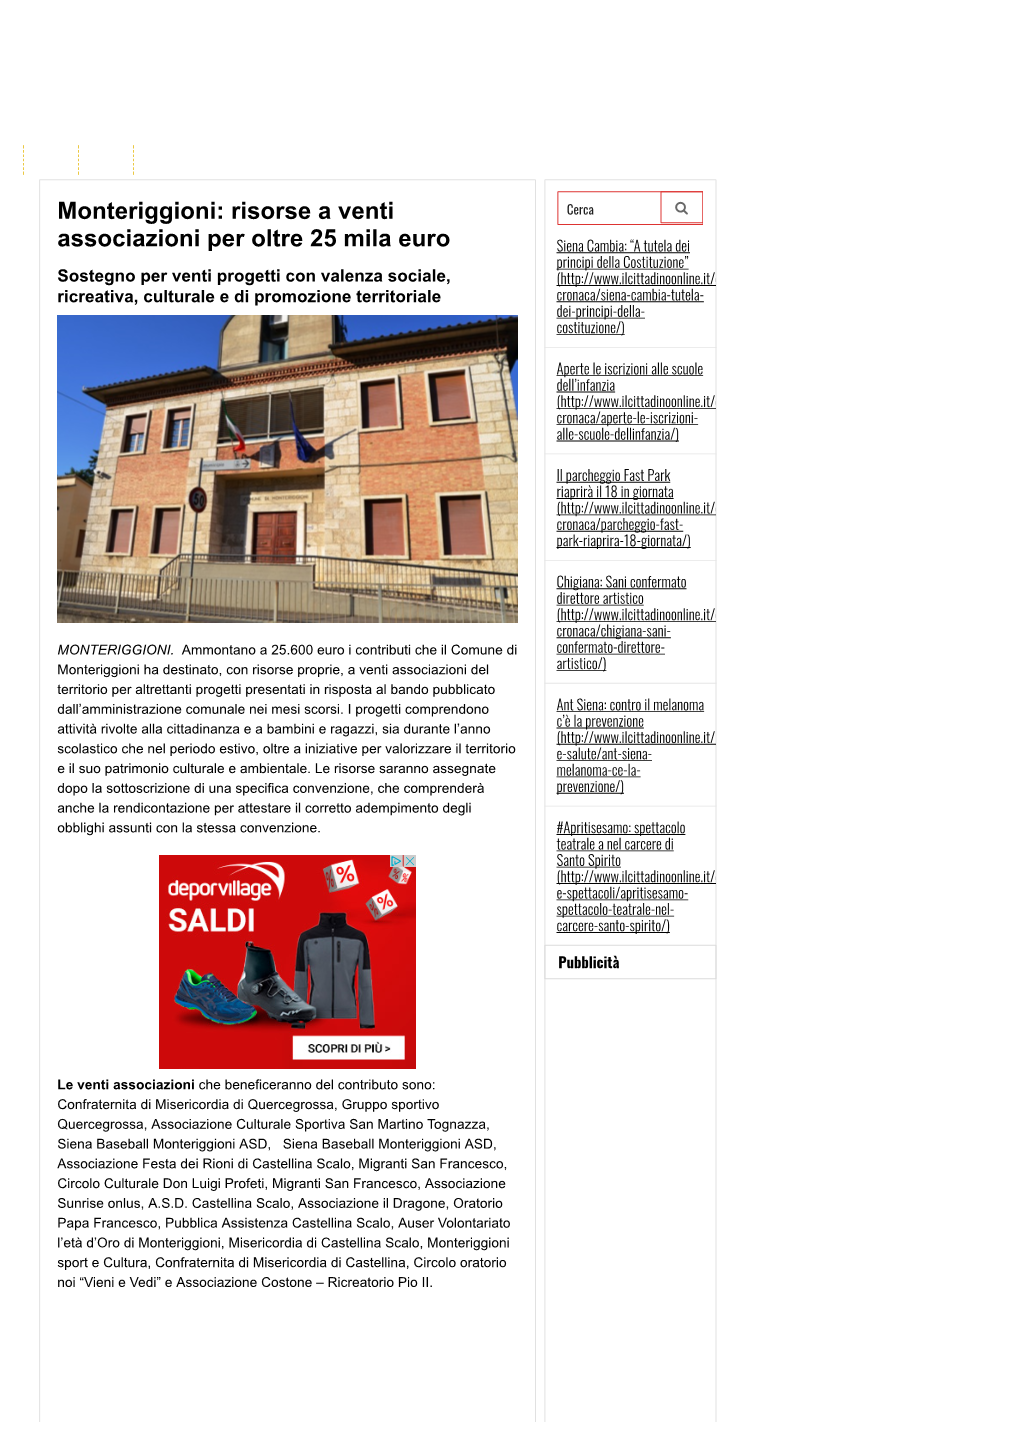 Monteriggioni: Risorse a Venti Associazioni Per Oltre 25 Mila Euro | Valdelsa.Net